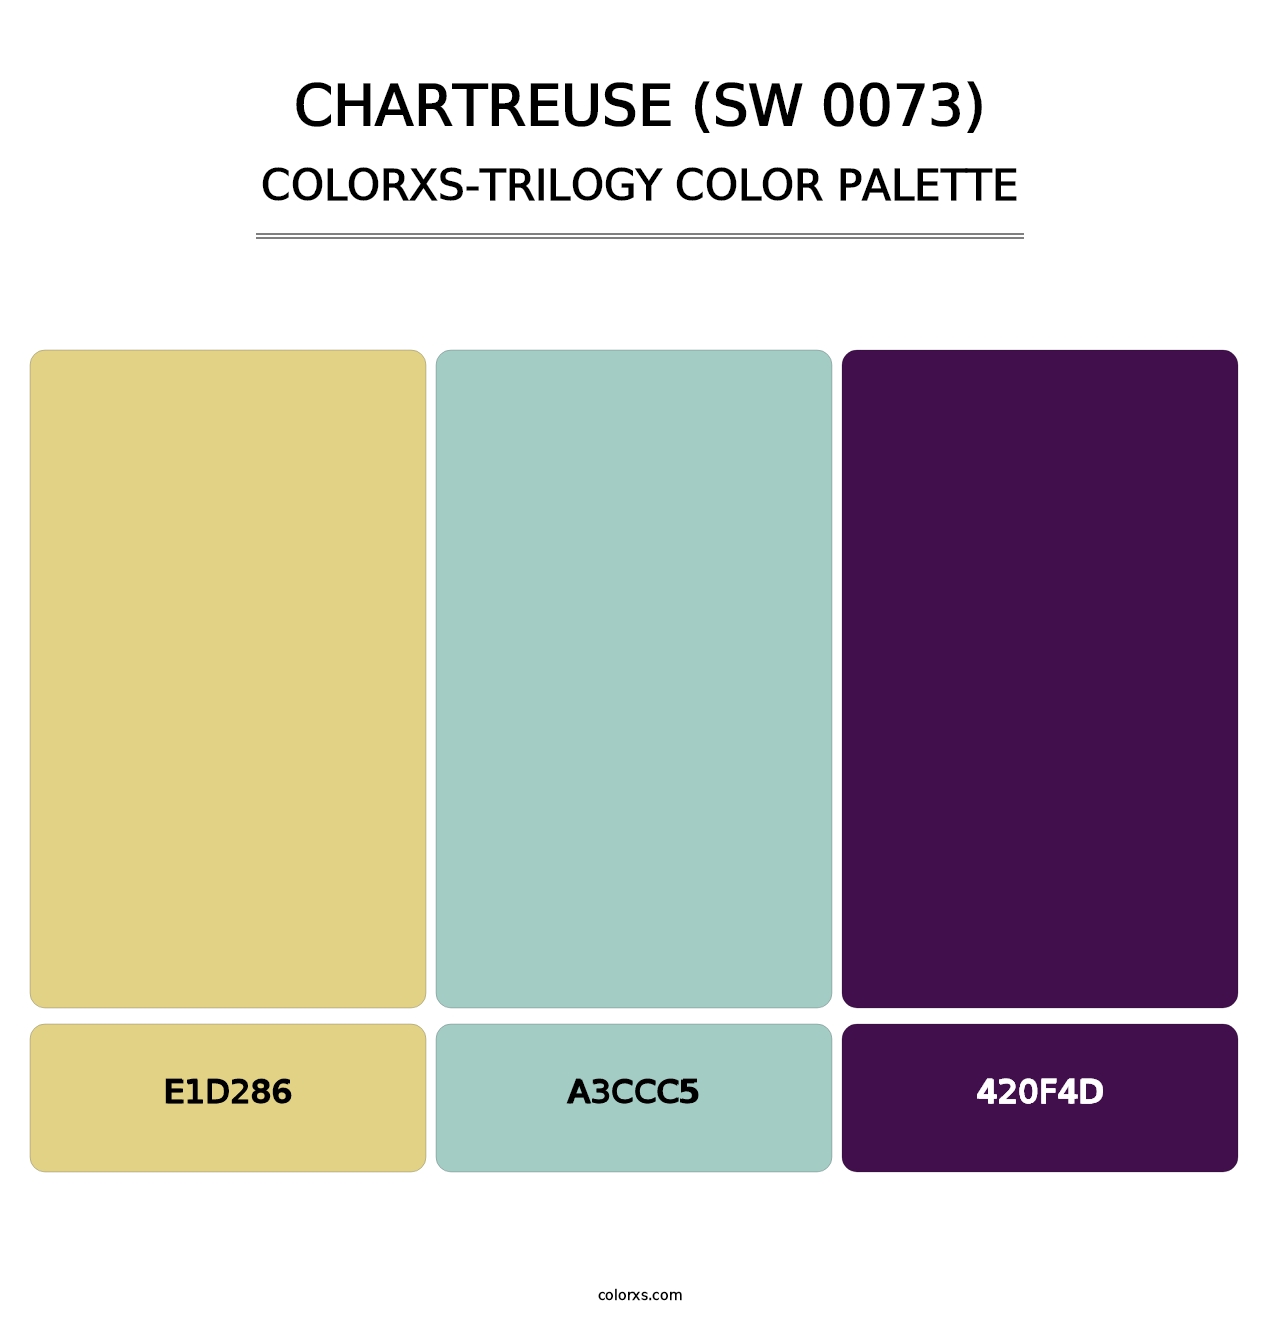 Chartreuse (SW 0073) - Colorxs Trilogy Palette